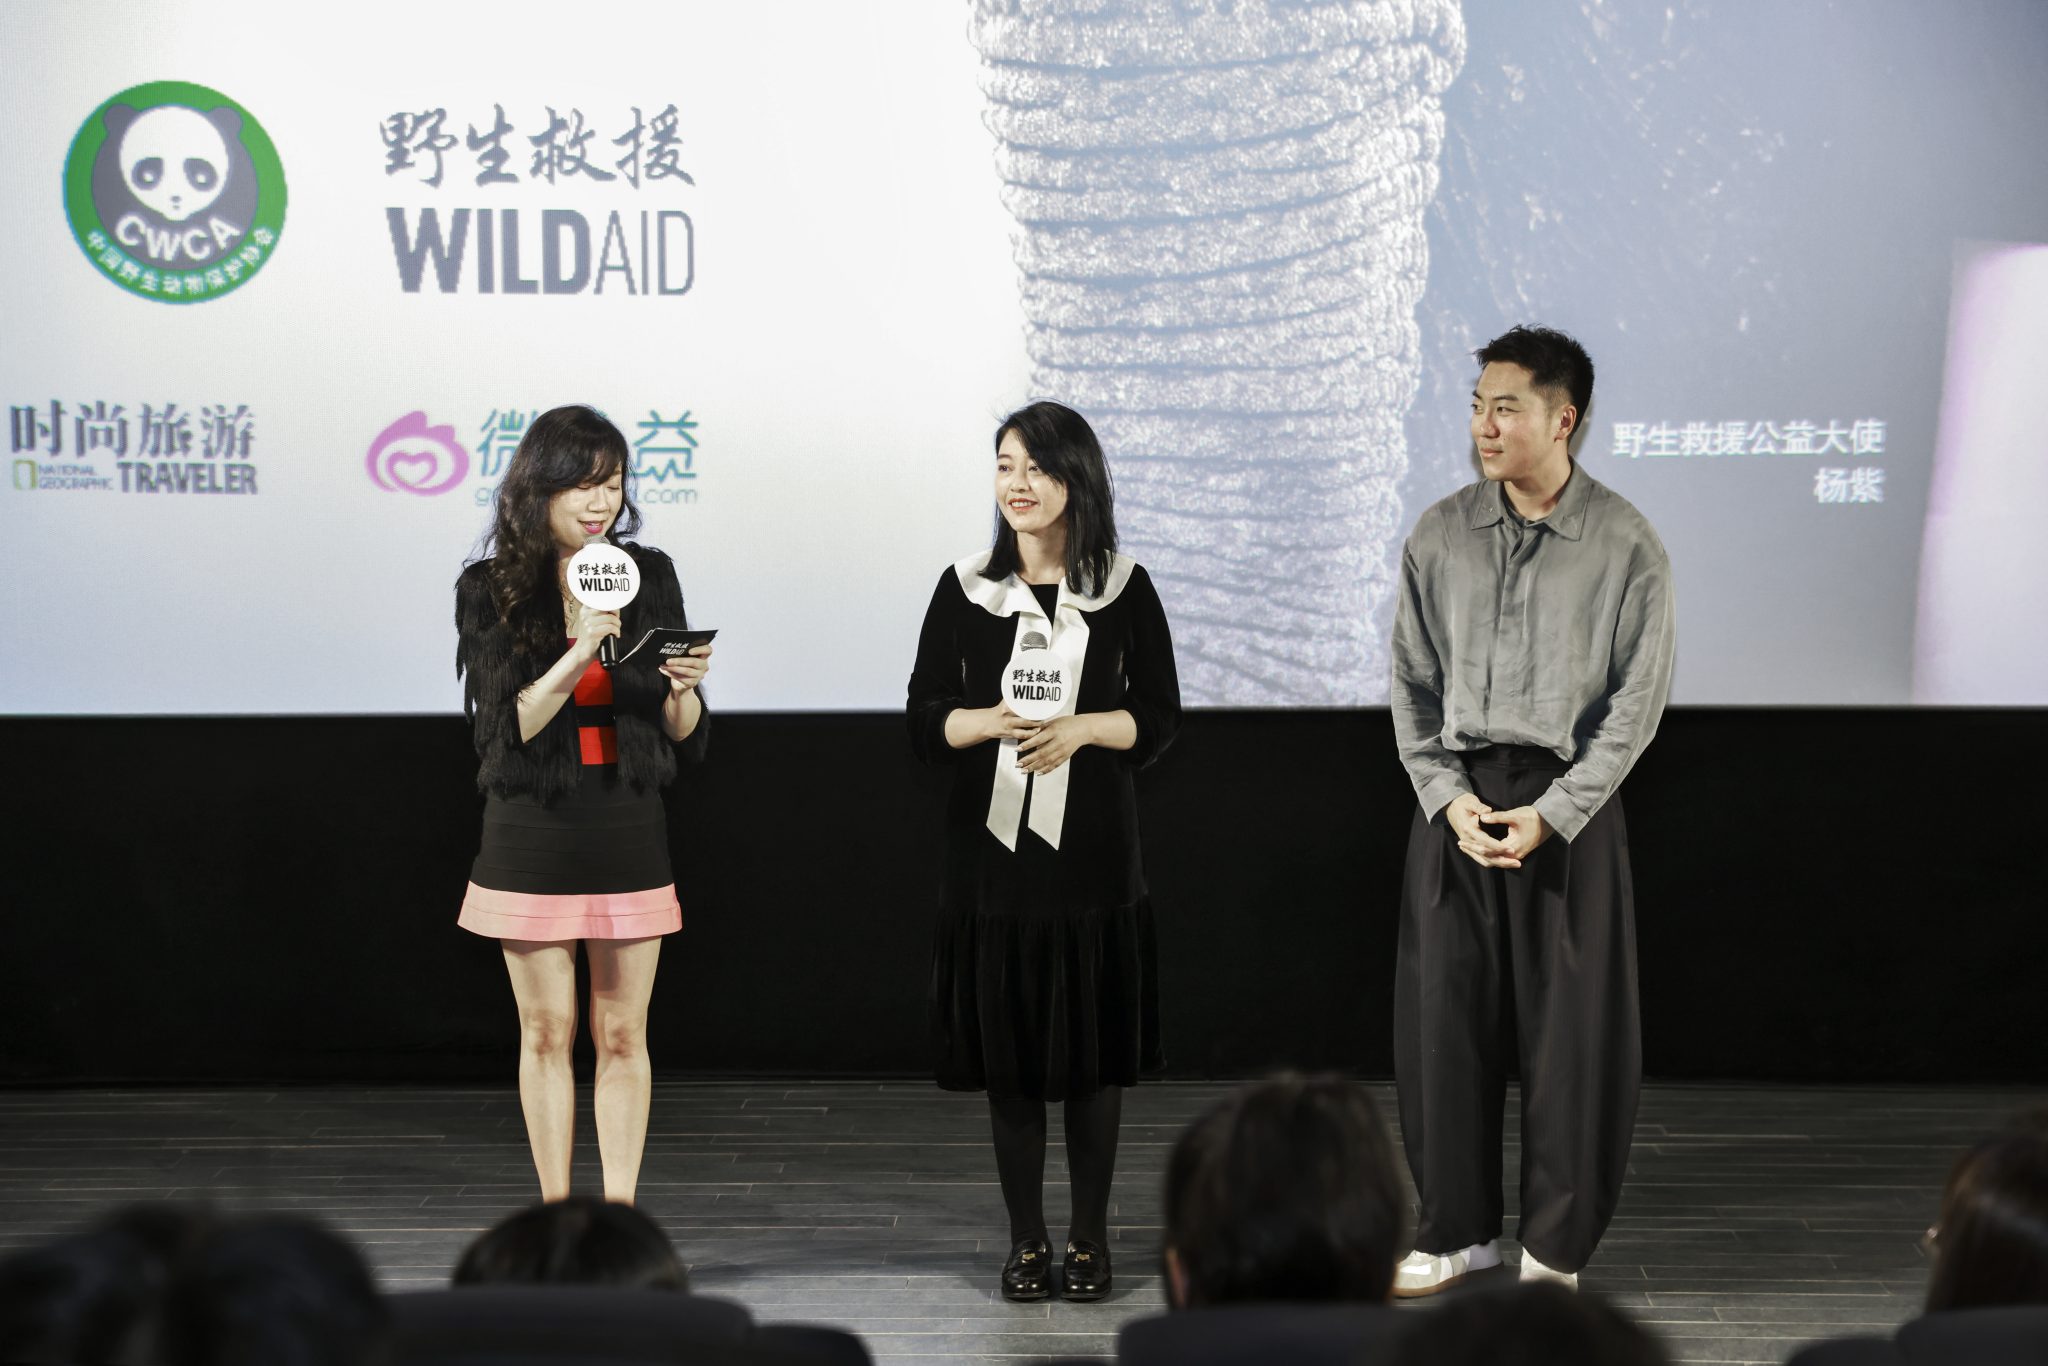 上海人民广播电台《长三角之声》的主播慧楠（左）、复星商业集团的副总裁周艳琪女士（中）、《时尚旅游》“为TA去旅行”公益项目负责人王子腾先生（右）